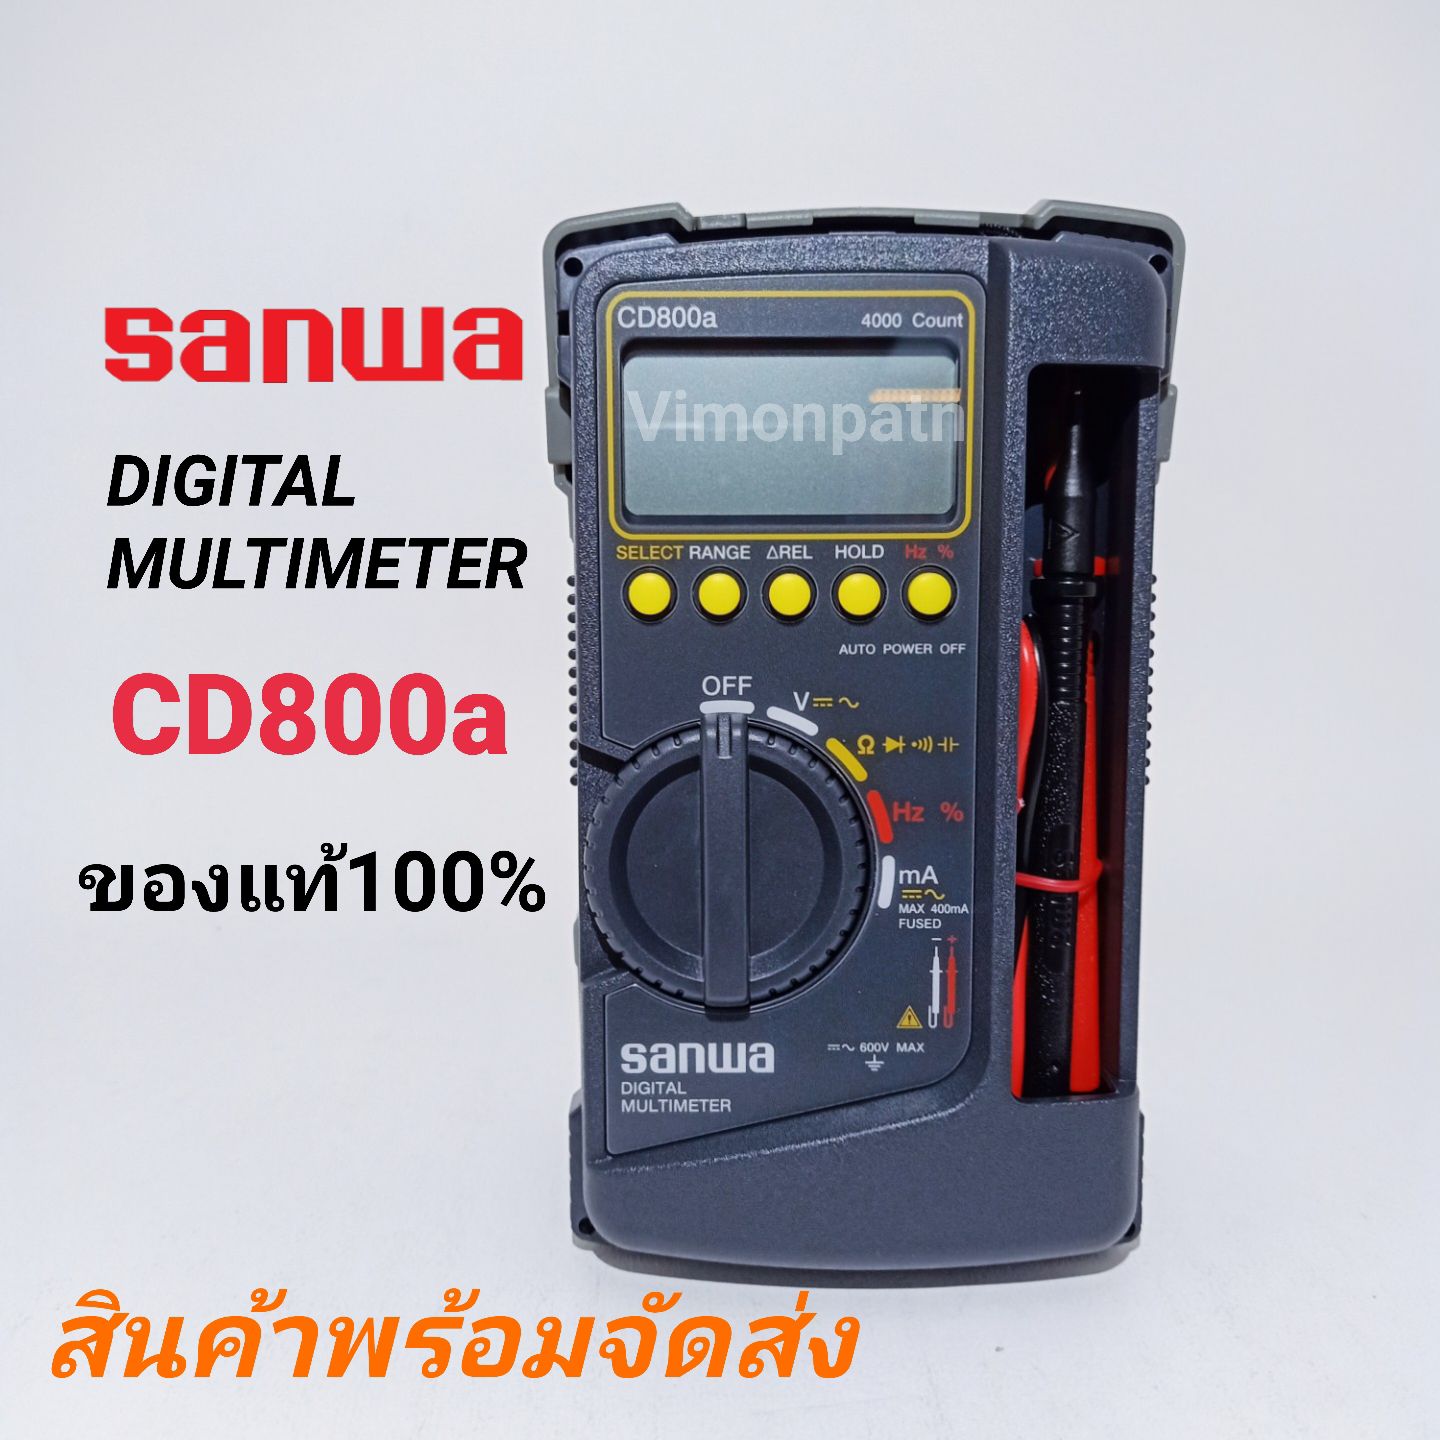 ดิจิตอล มัลติมิเตอร์ SANWA CD800a ของแท้ 100%